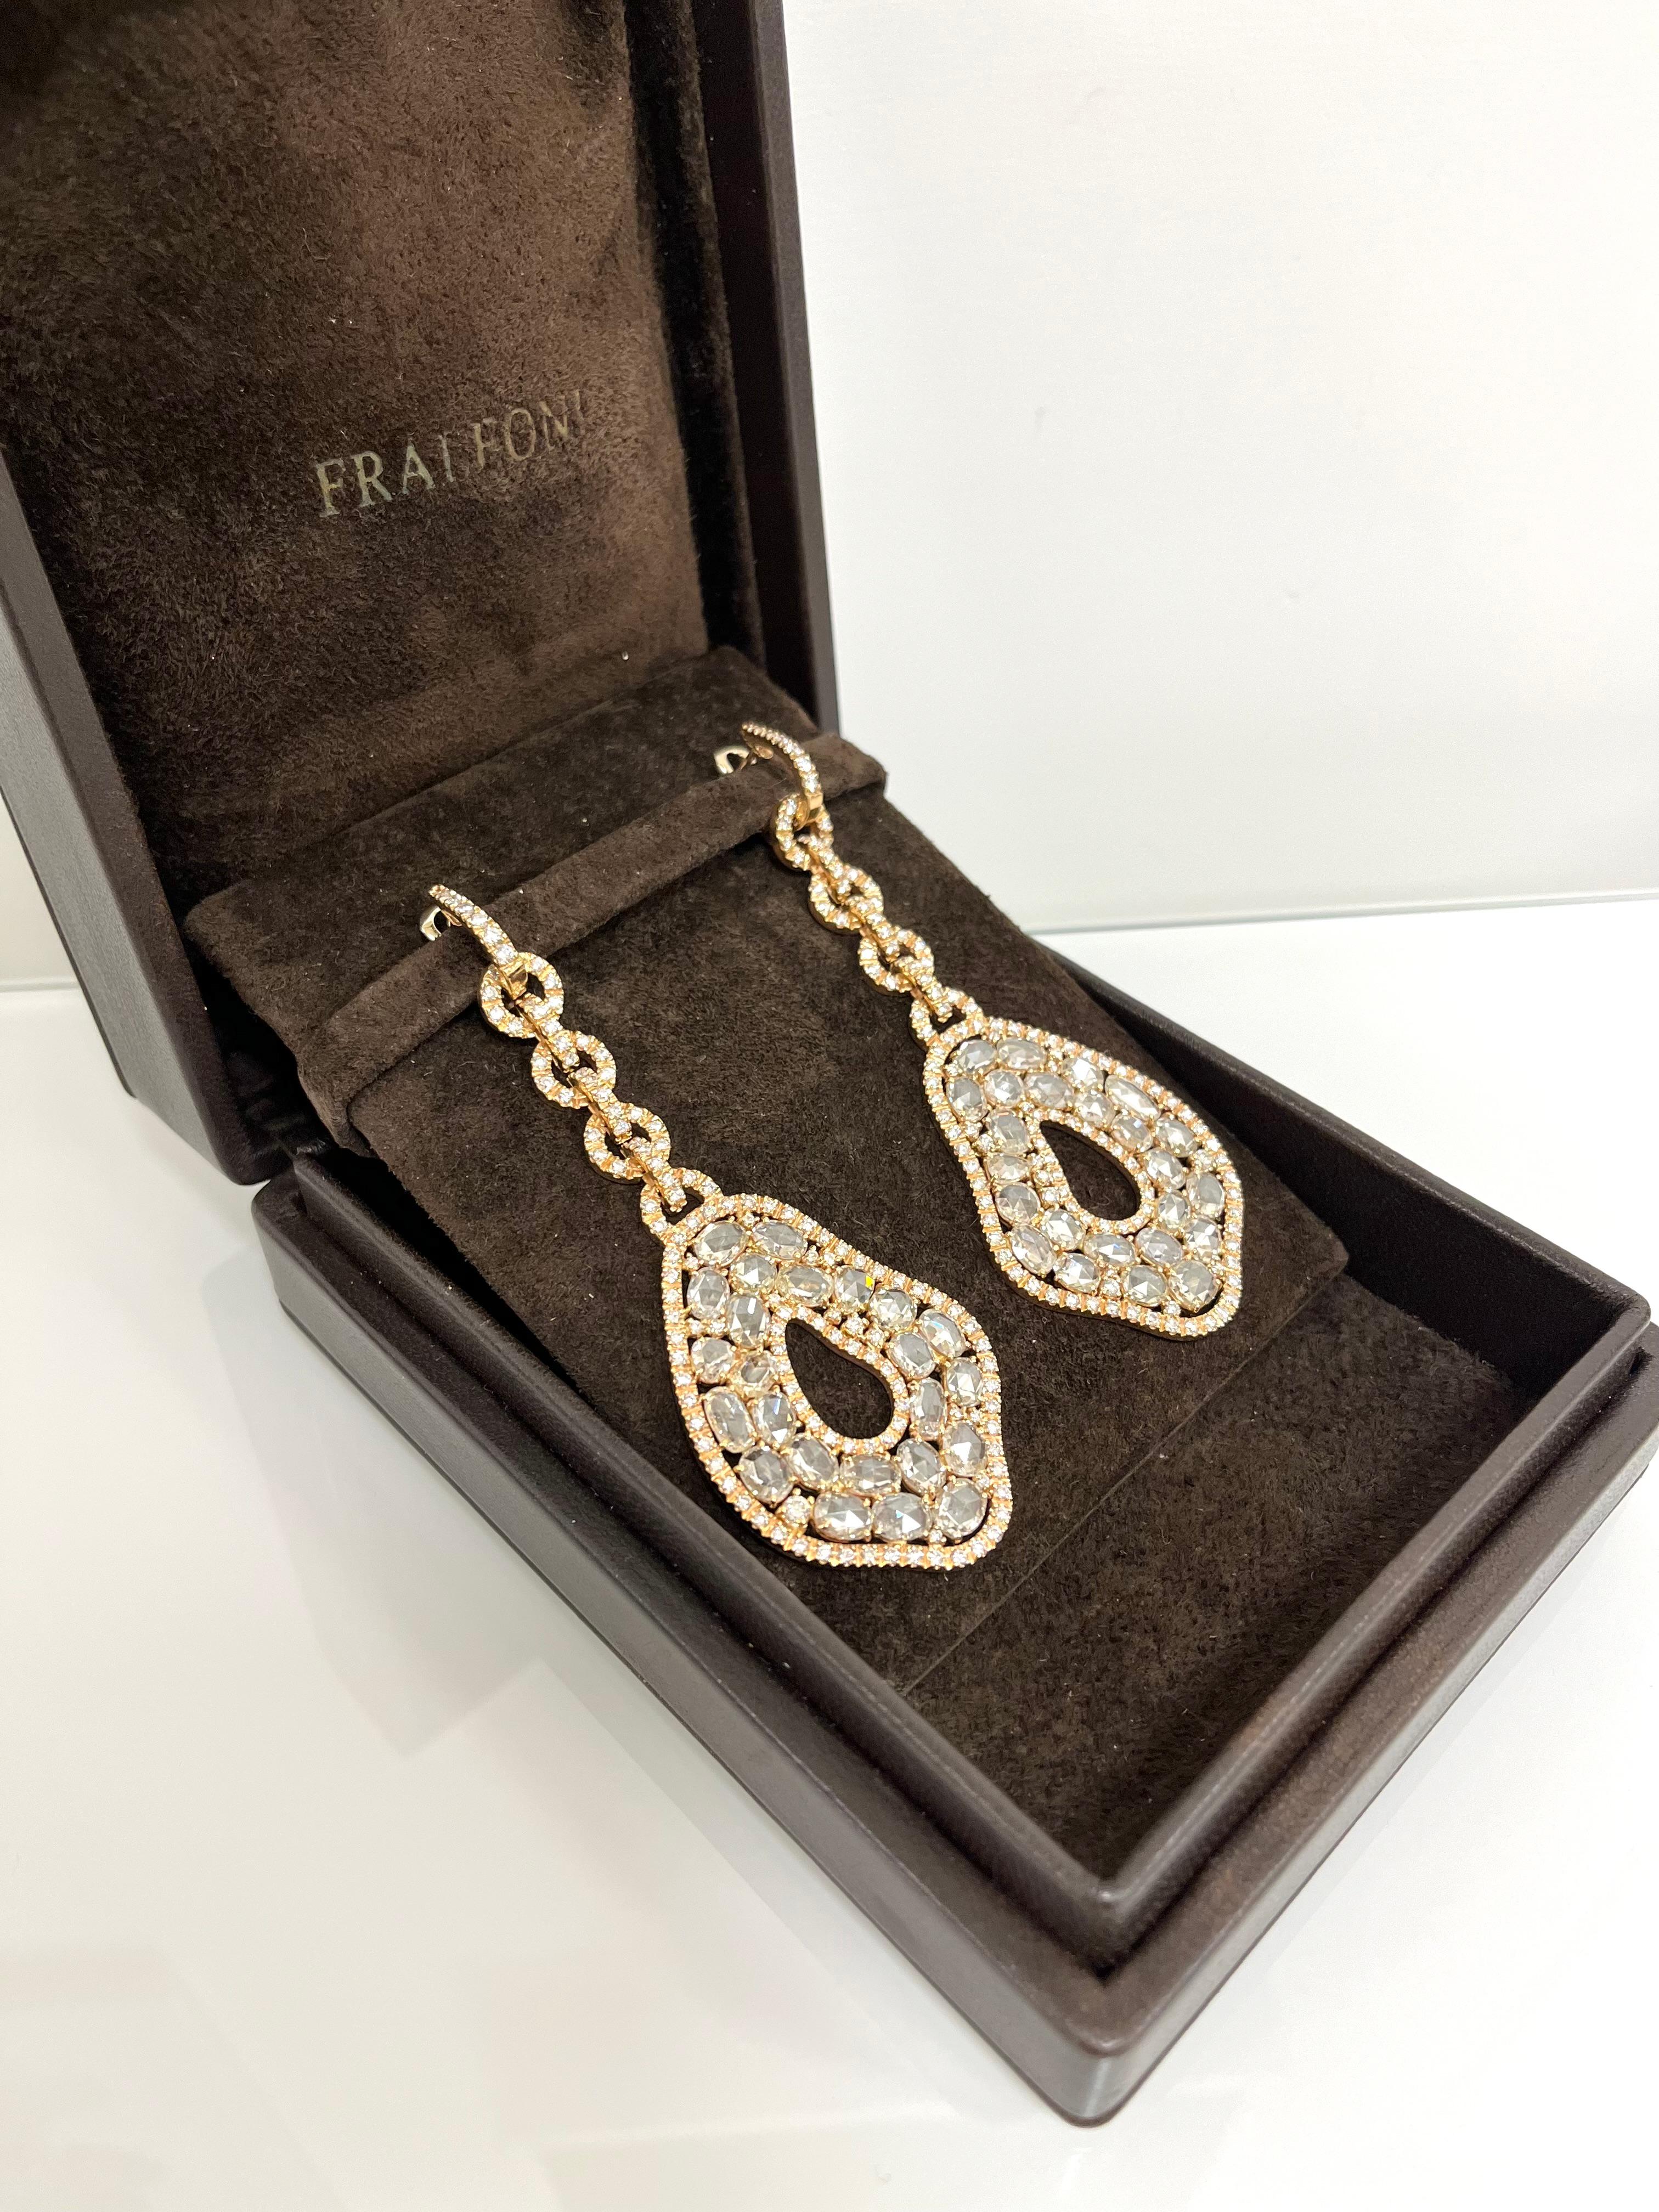 Fraleoni 18 Kt. Rose Gold Diamonds Earrings For Sale 2